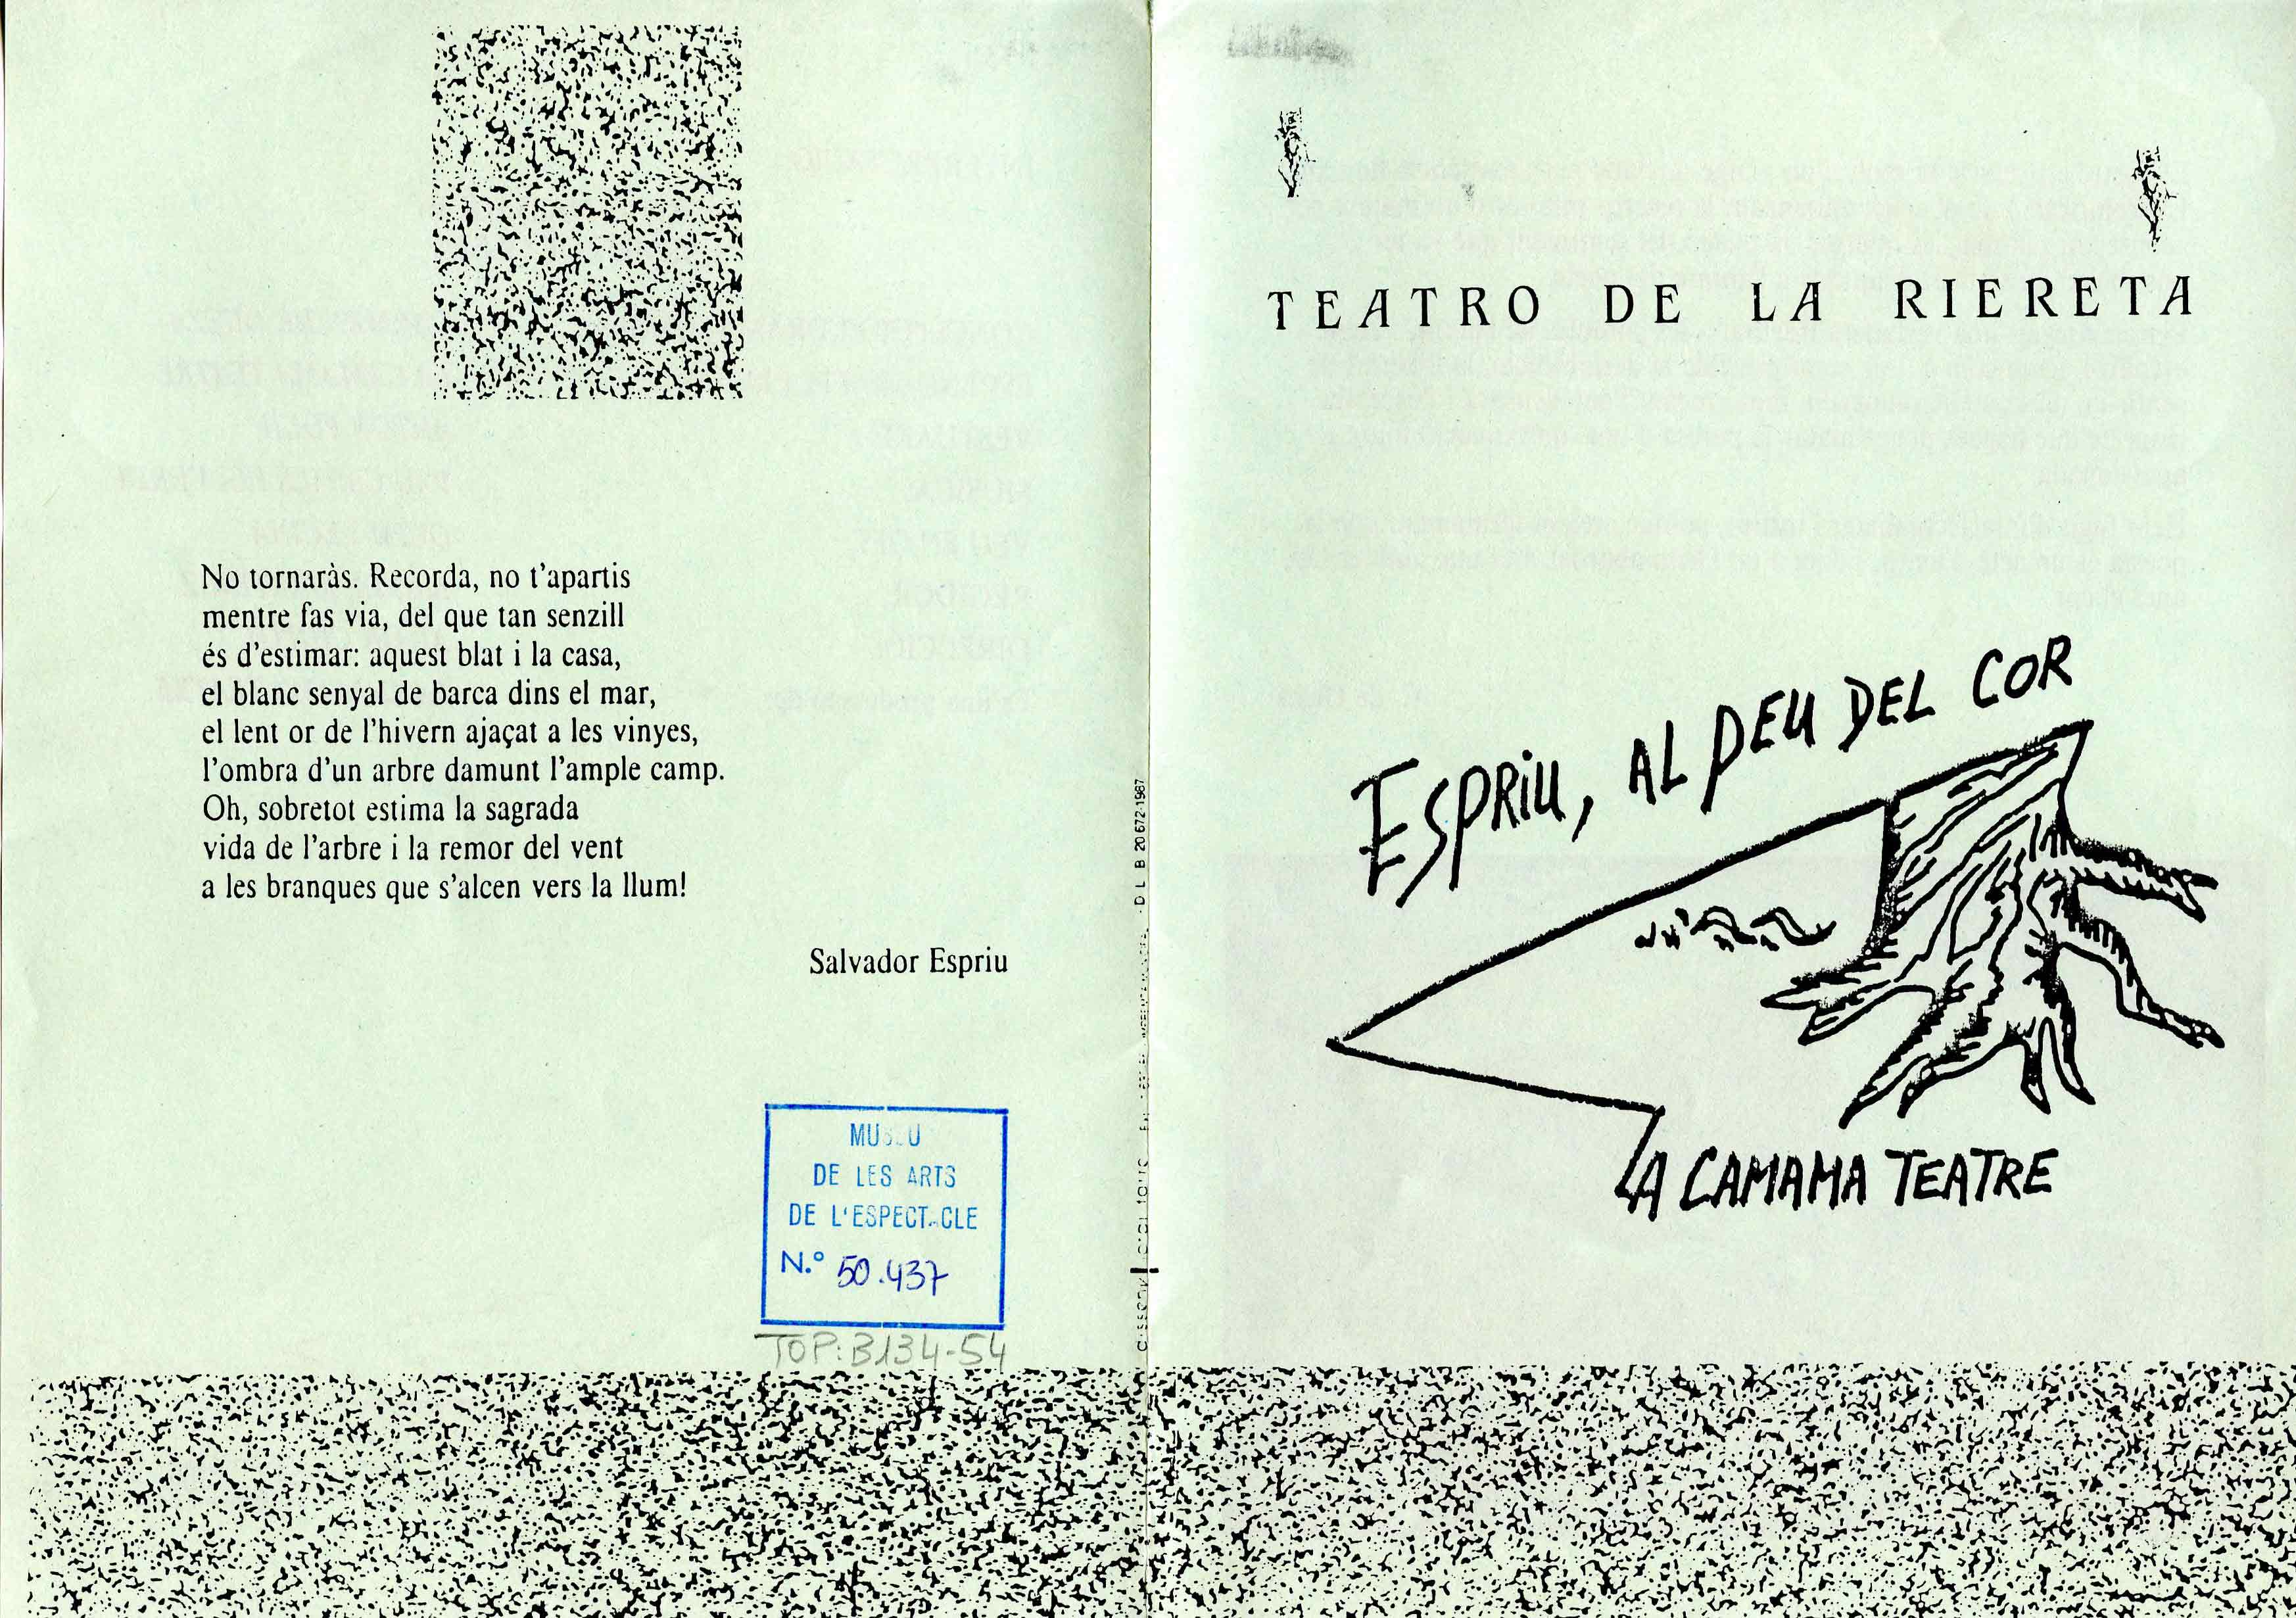 Programa. Espriu, al peu del cor. Teatre de la Riereta. 1987